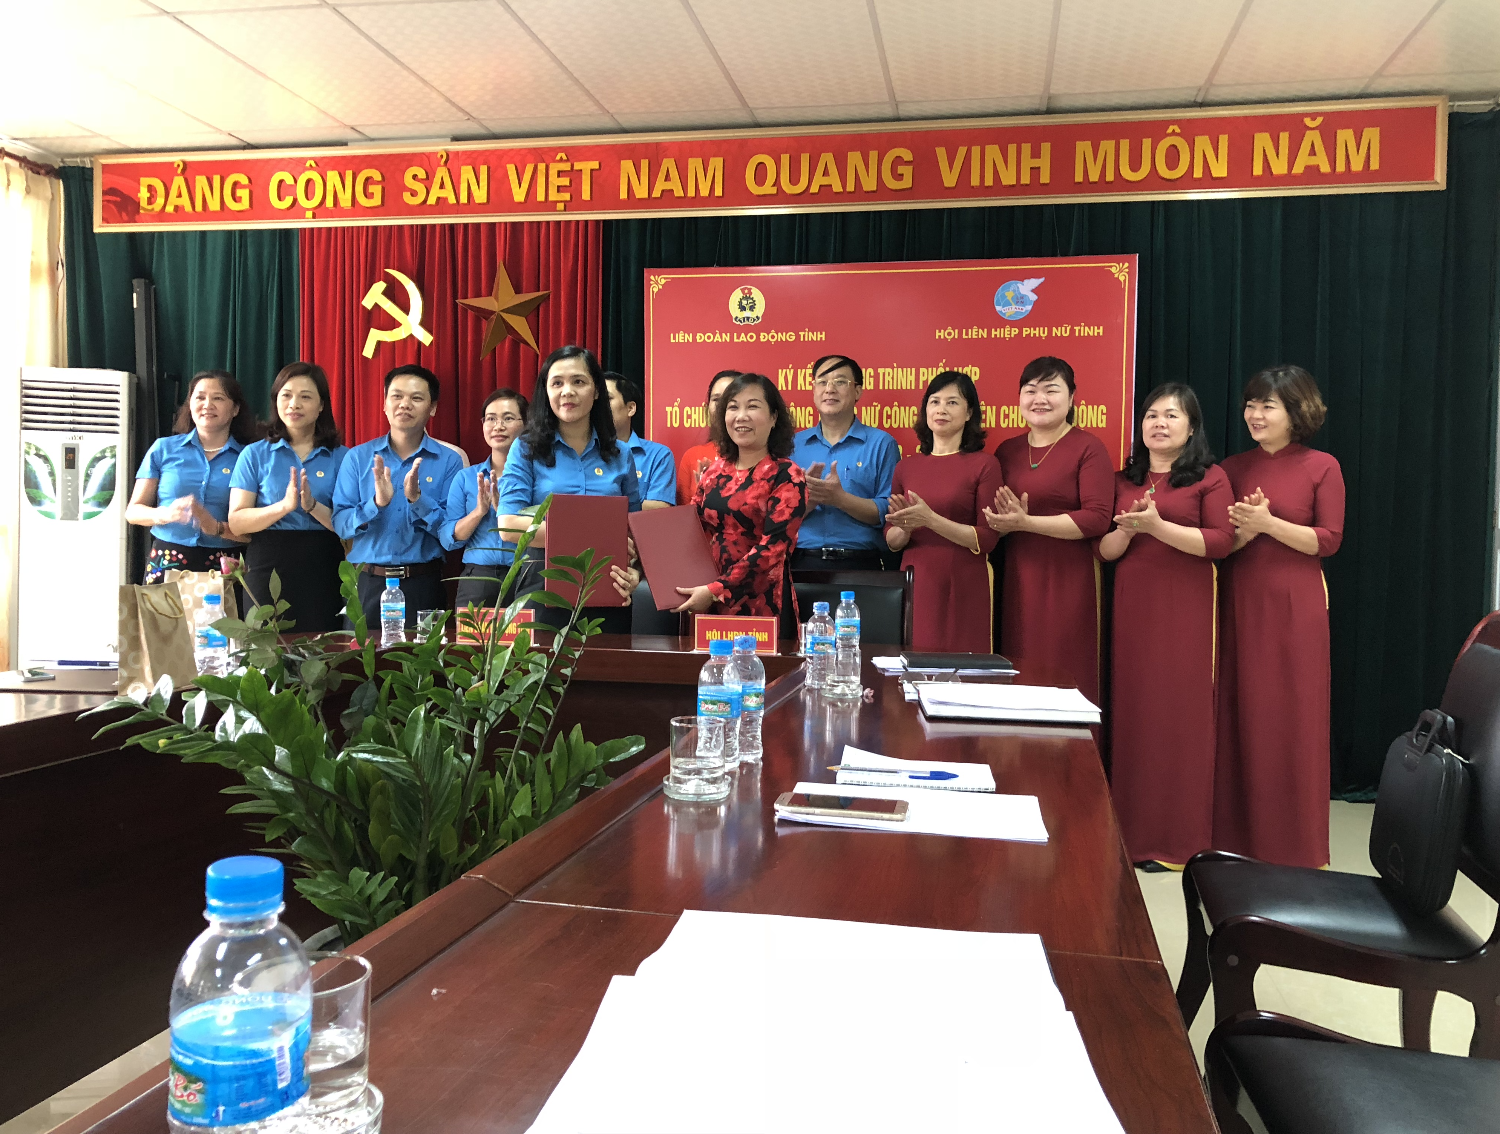 Đồng chí Hà Nhật Lệ và Đồng chí Nguyễn Ngọc Thư ký kết chương trình phối hợp giai đoạn 2018 - 2022.